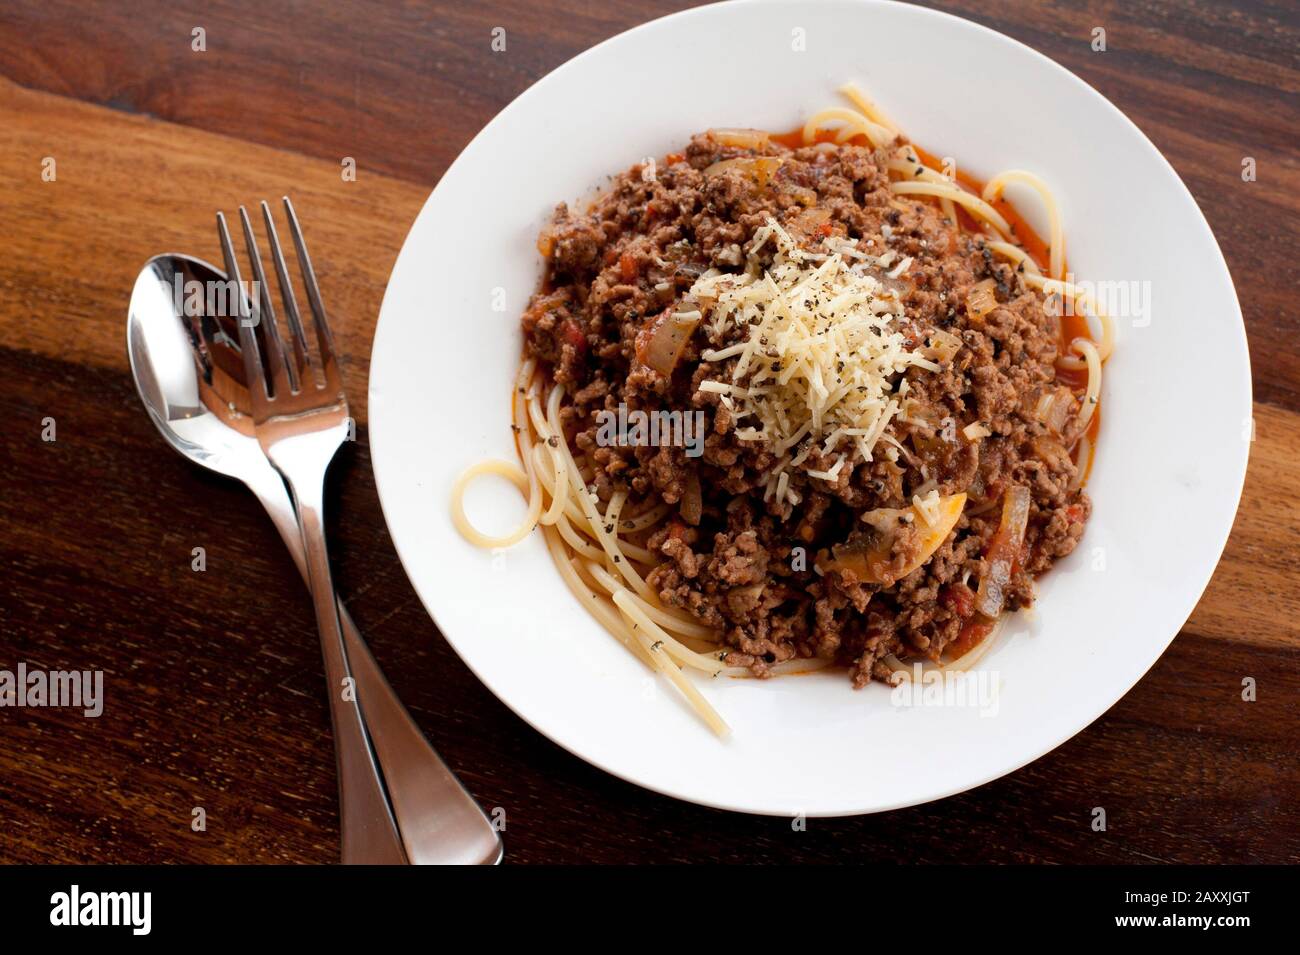 Vista dall'alto di un piatto di spaghetti alla bolognese, o alla bolognaise, fatti con mince di manzo e conditi con formaggio grattugiato Foto Stock